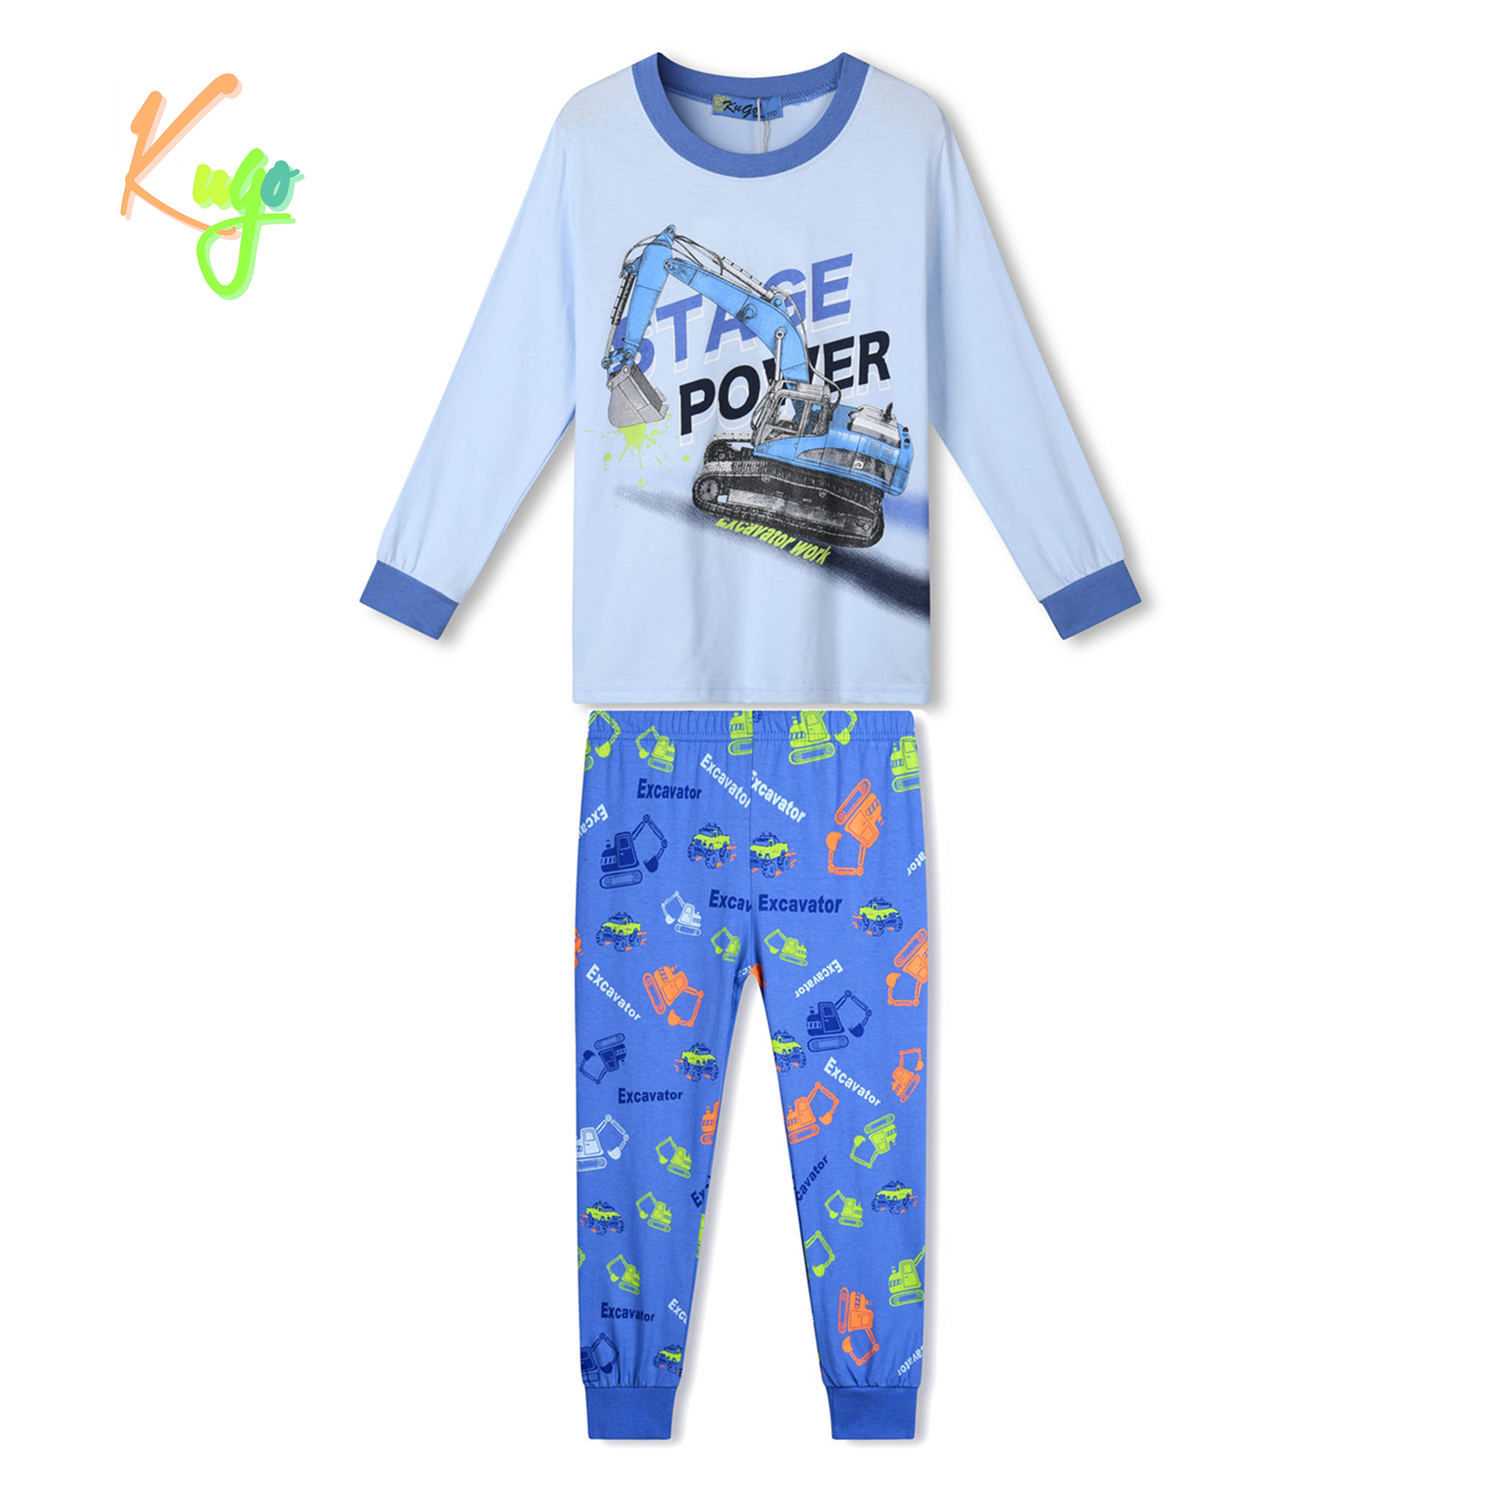 Chlapecké pyžamo - KUGO MP1370, světlonce modrá Barva: Modrá, Velikost: 116